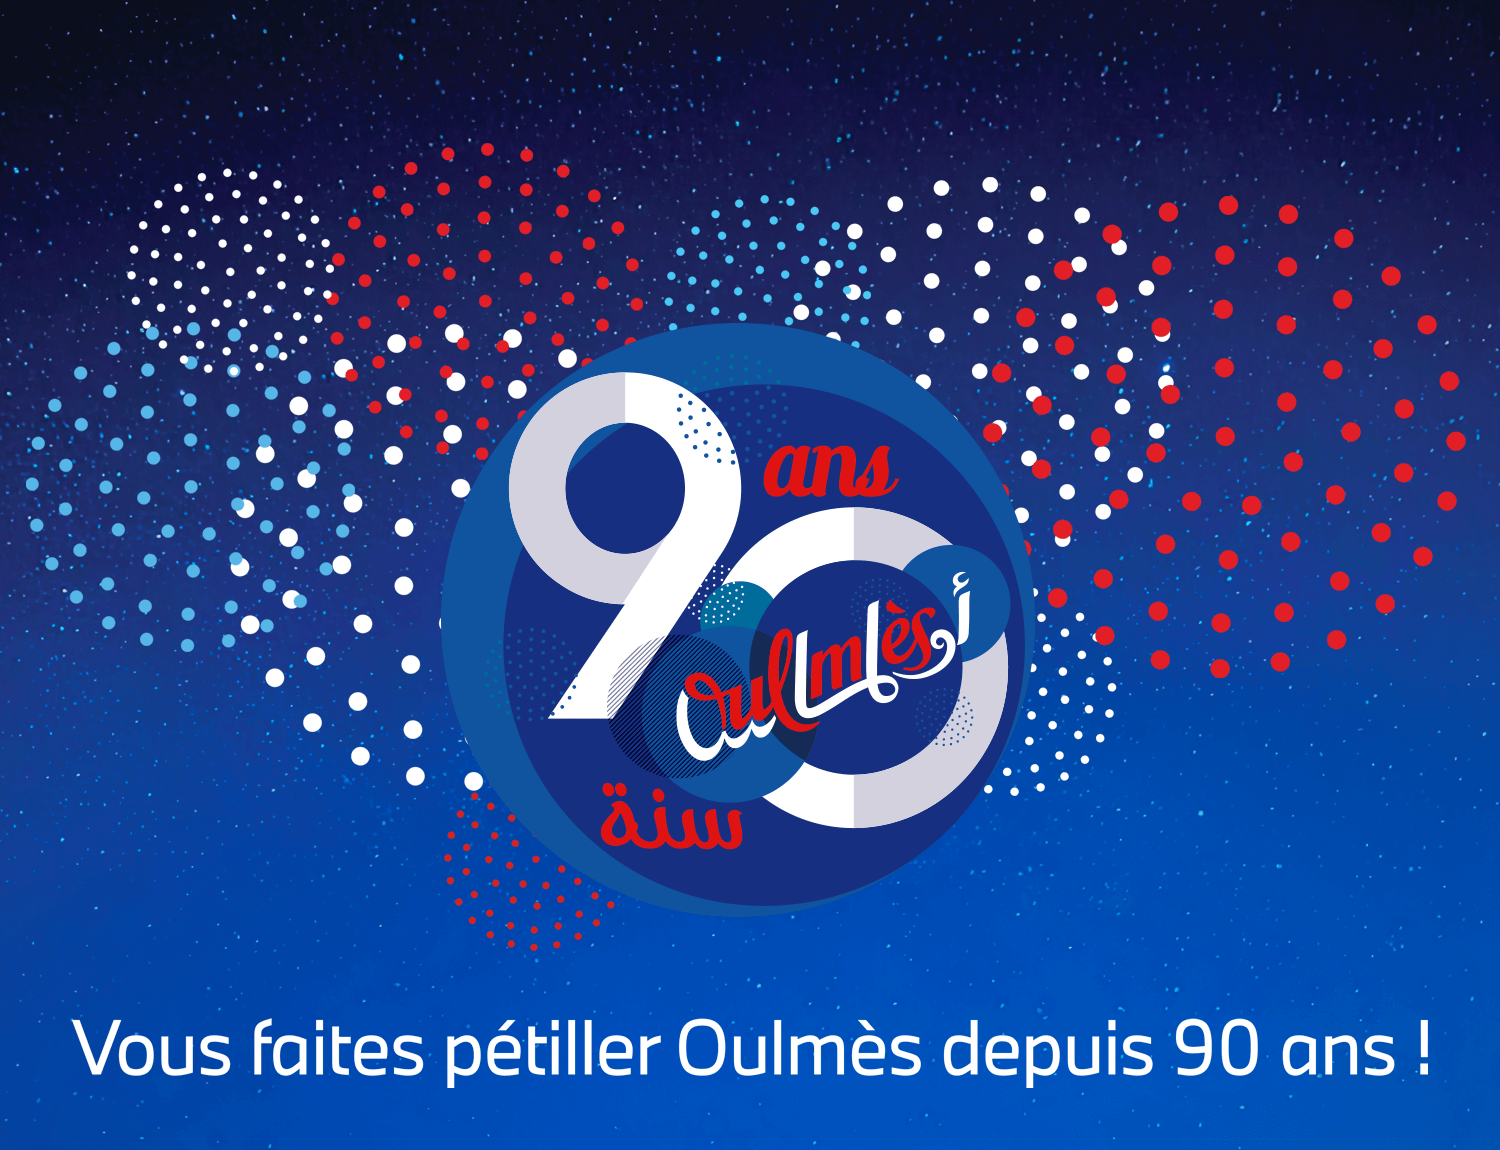 OULMÈS LANCE LA CAMPAGNE #TIMELESS_OULMÈS À L’OCCASION DE SON 90ÈME ANNIVERSAIRE